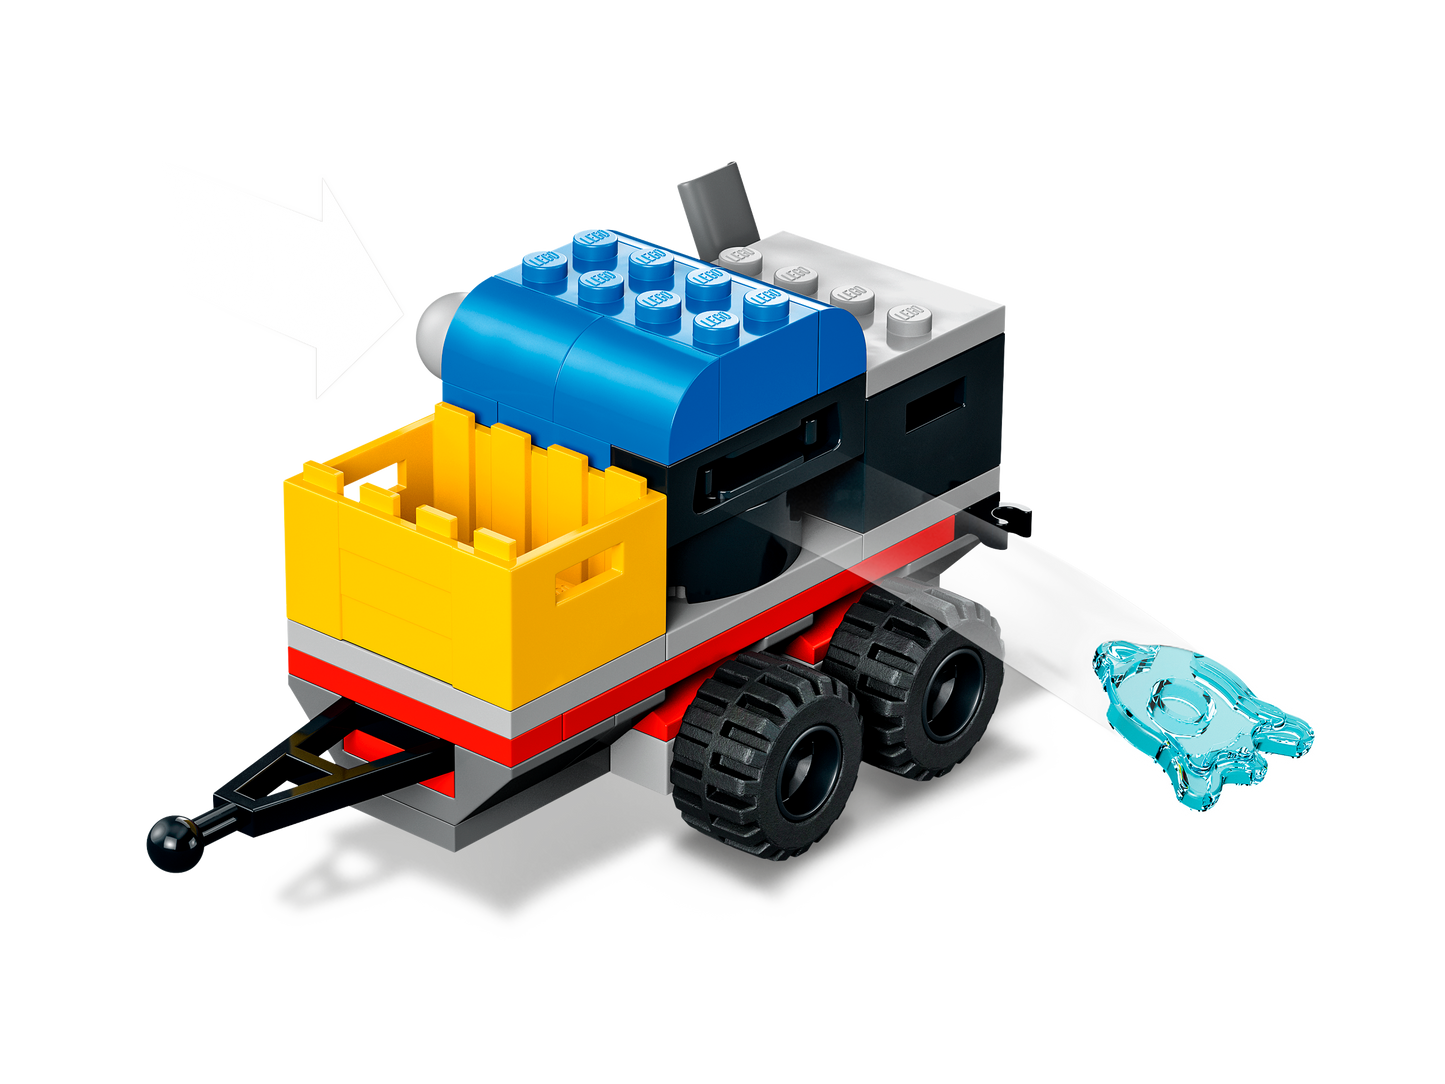 LEGO® set 60321